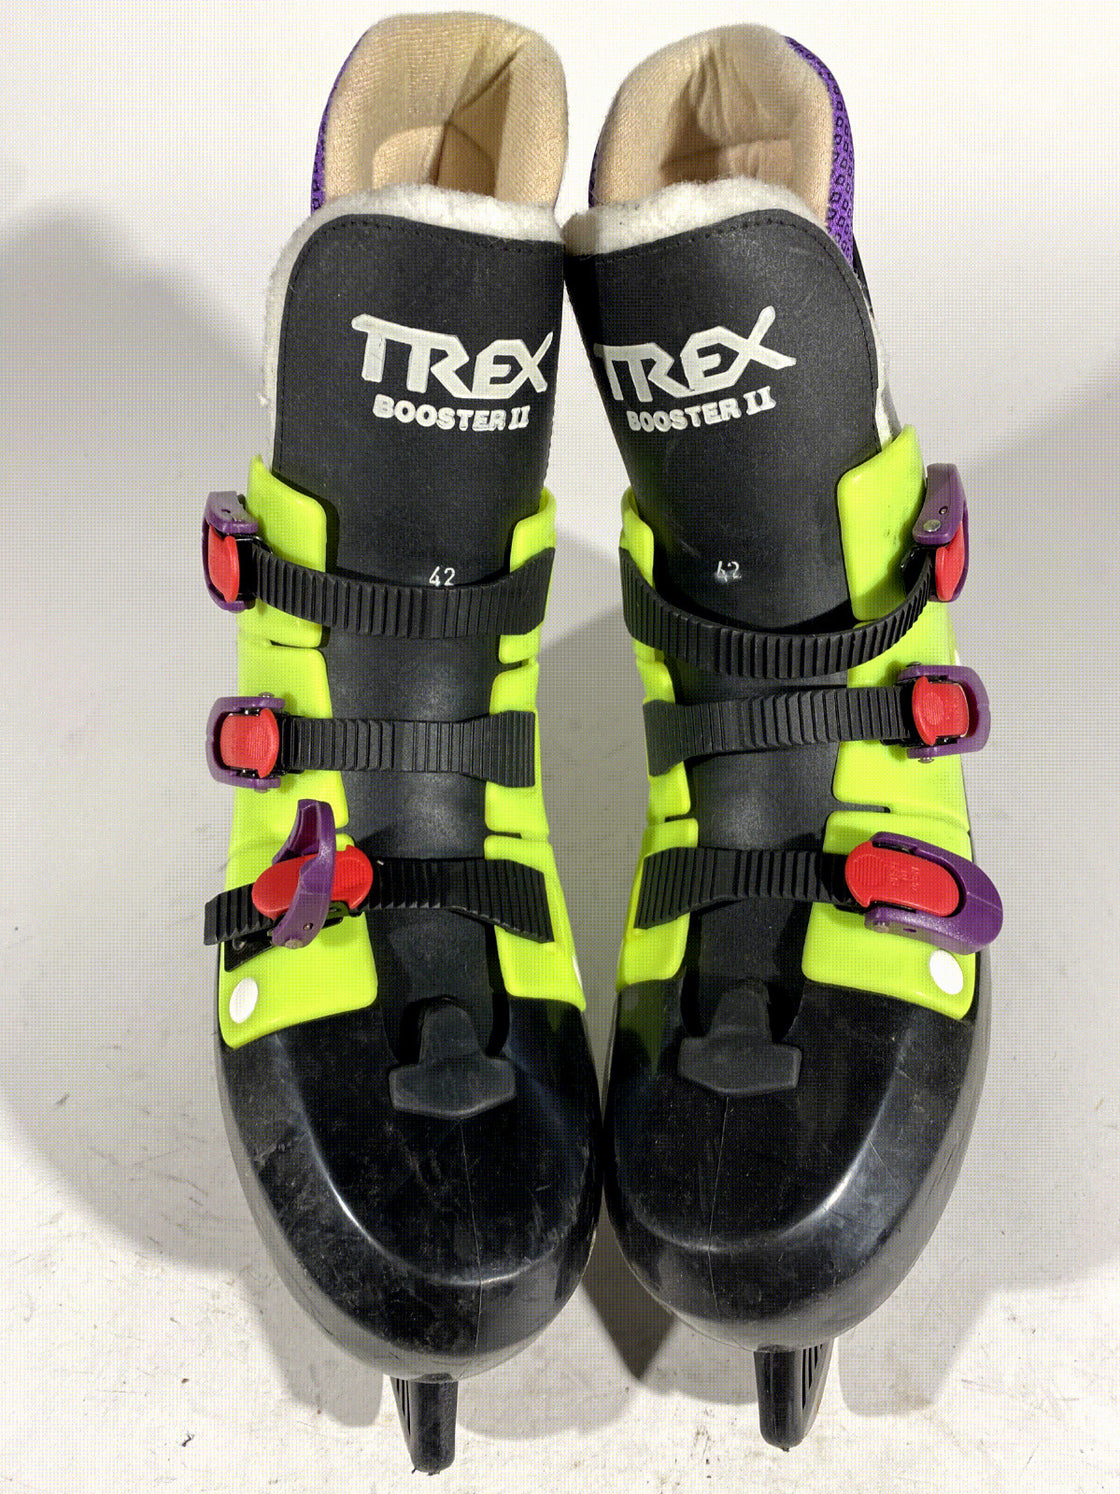 Trex Ice Skates Recreational Winter Sports Unisex Size EU42 US9 Mondo 270